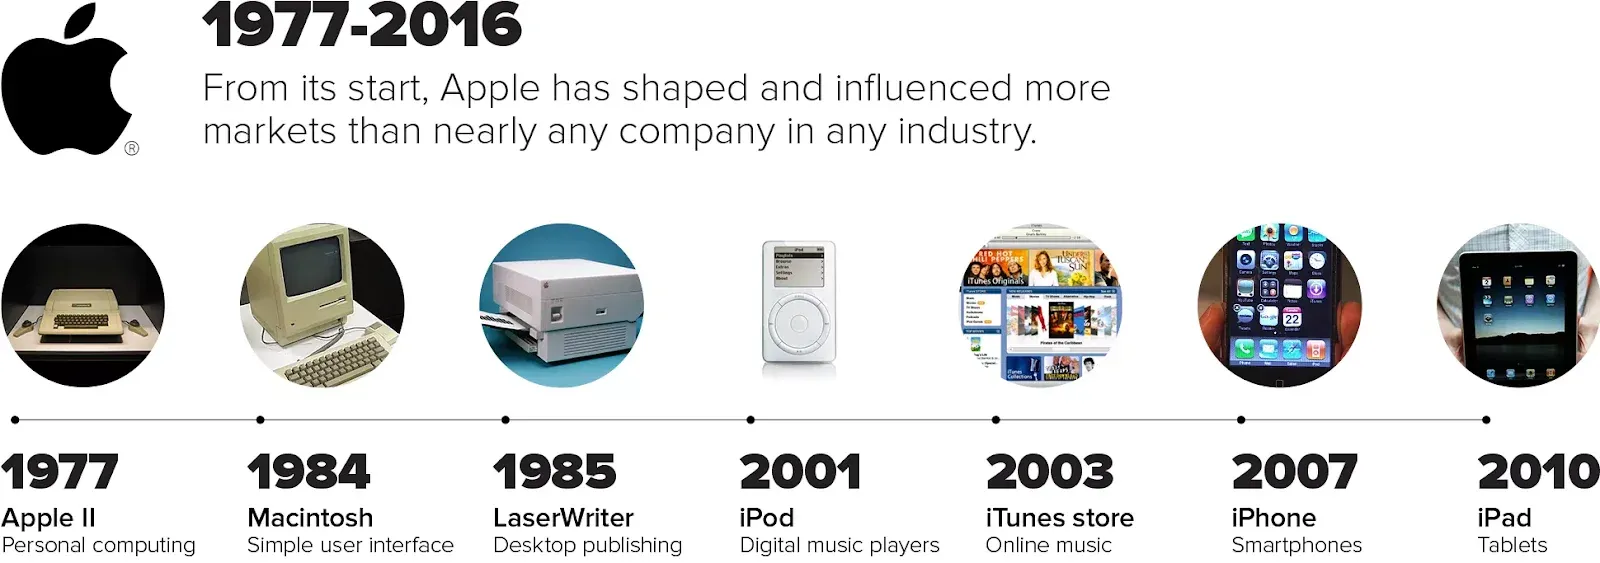 La chronologie des innovations Apple | Source : cnet.com